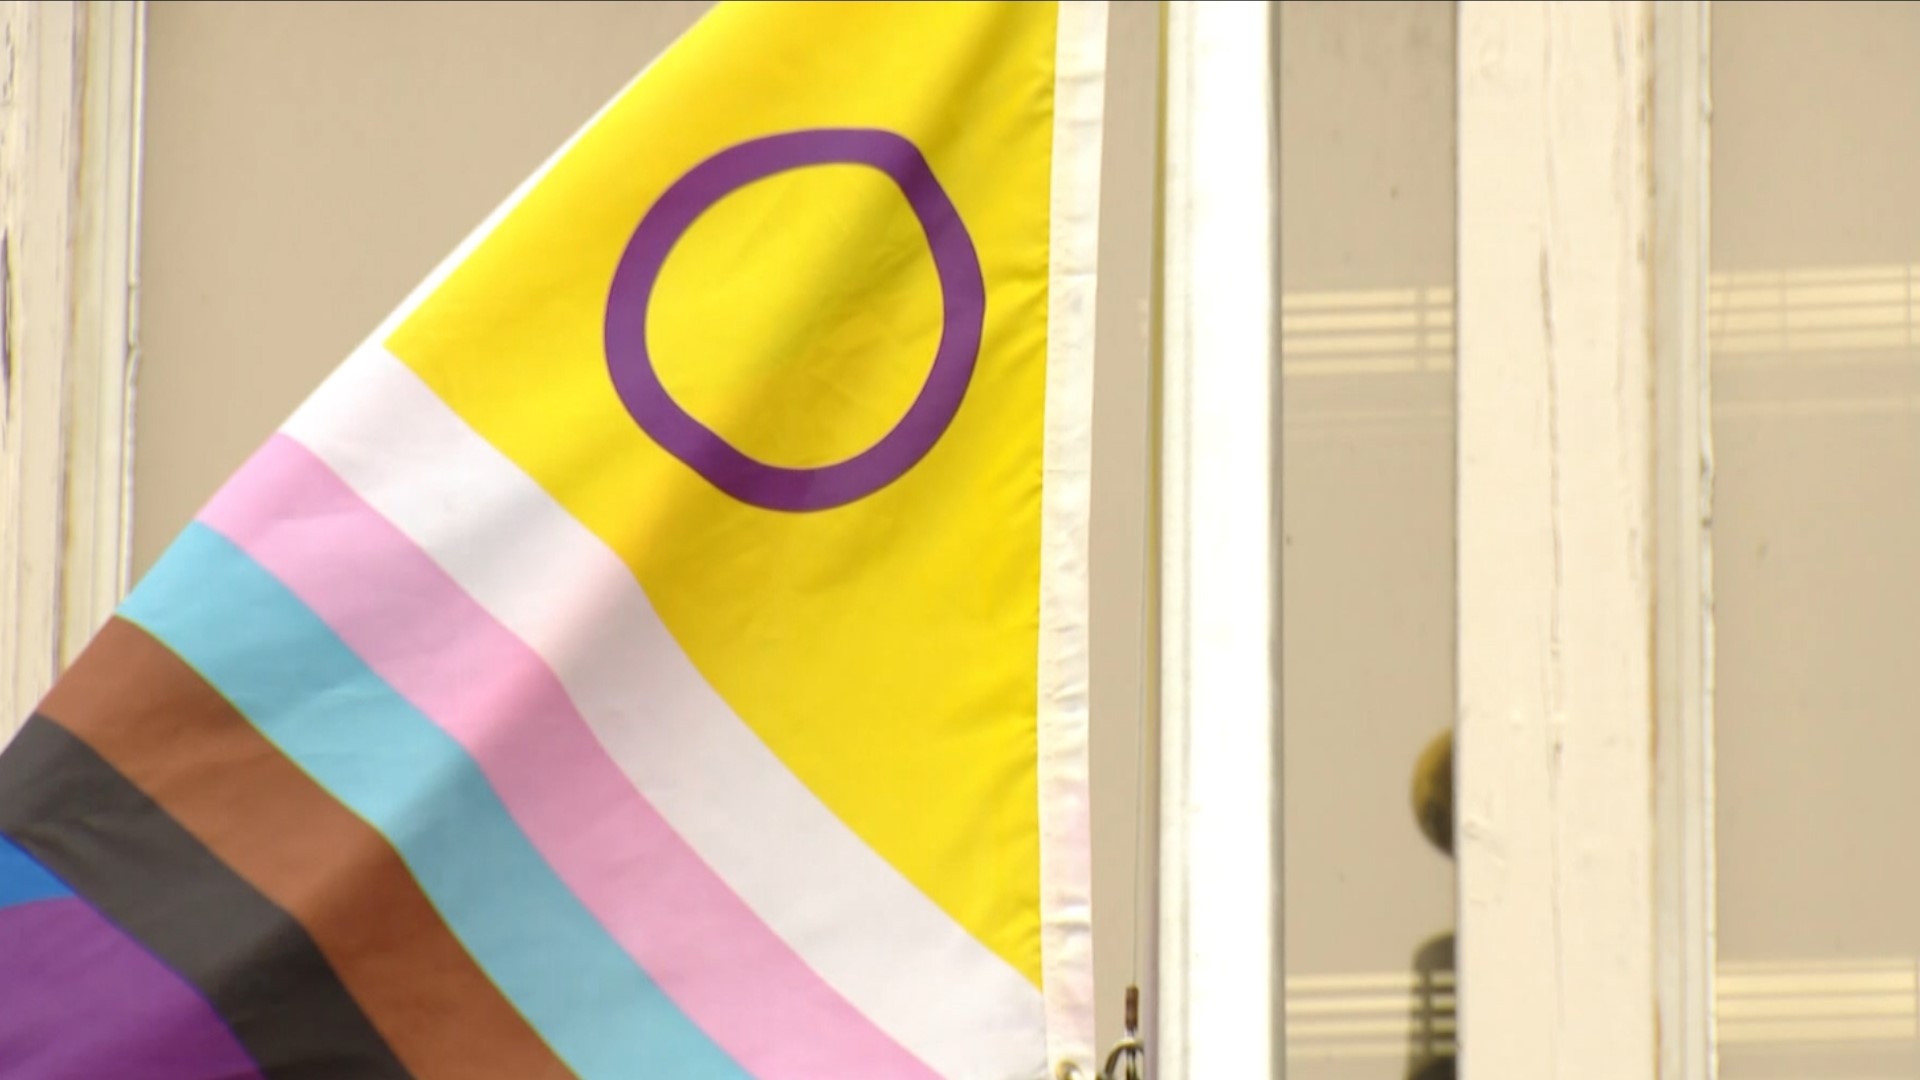 Pride flag raising ceremonies held across San Diego County